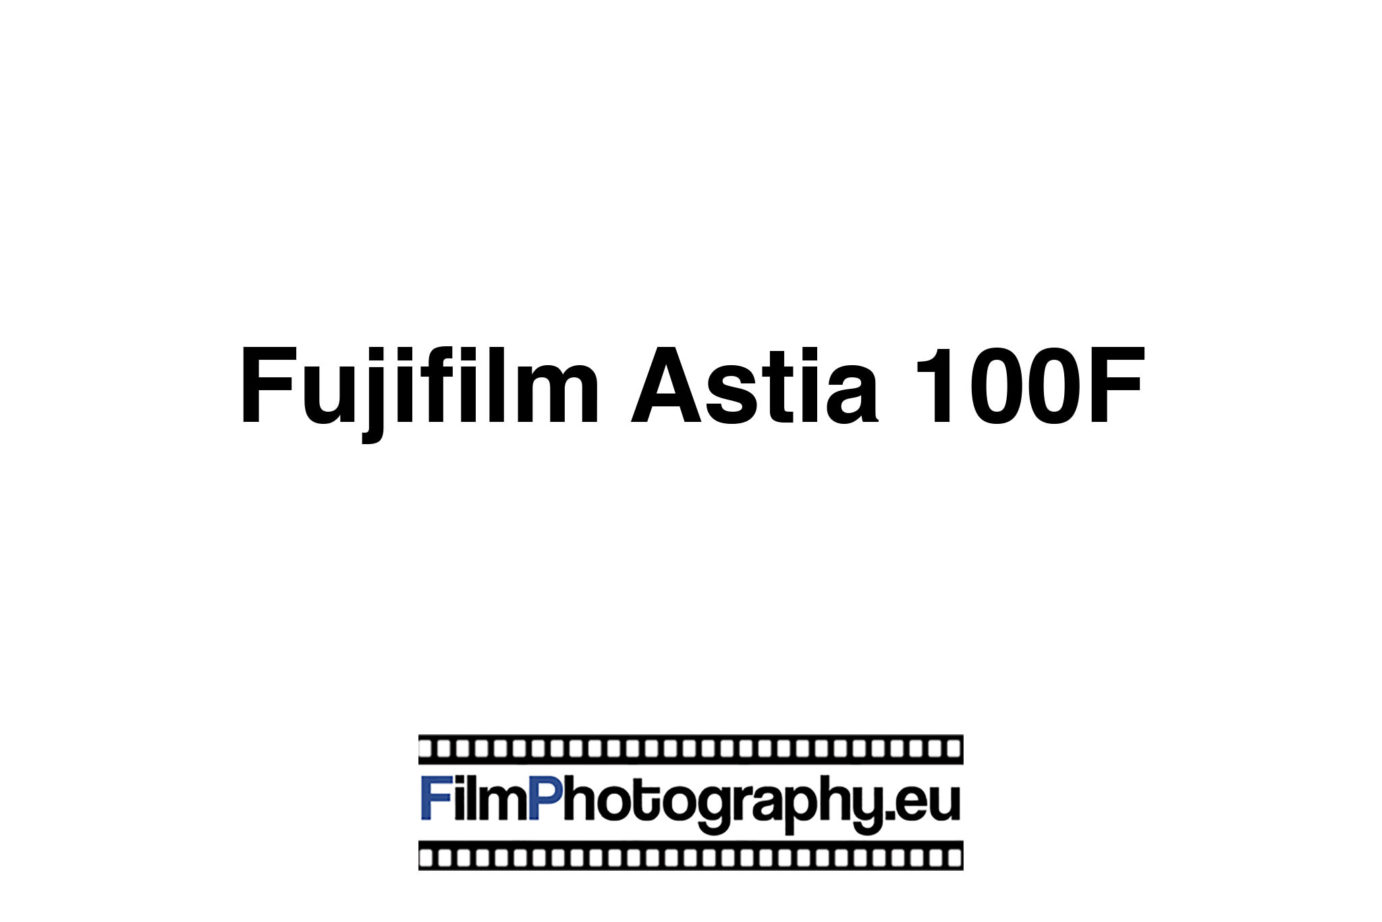 Fujifilm Astia 100F | Guide for the film